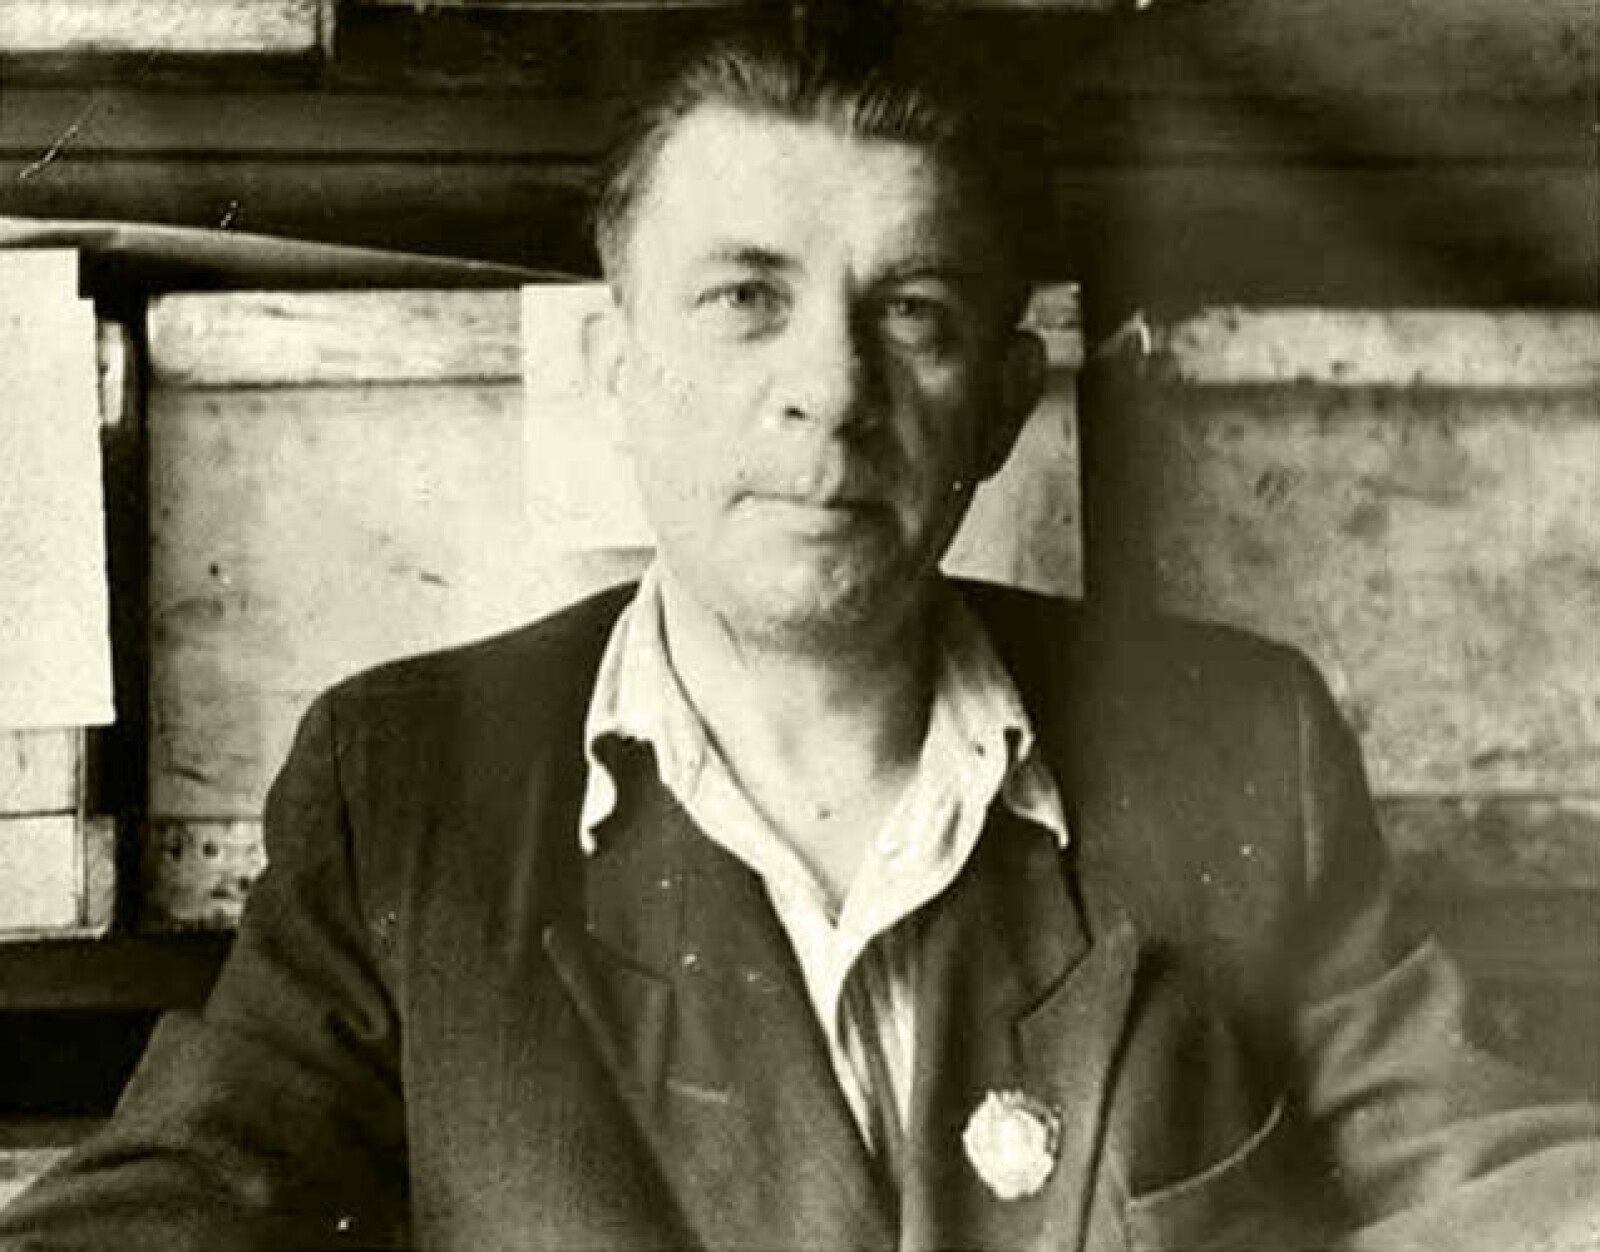 <b><SPAN CLASS=BOLD>ALKOHOLISERT:</b></span> Marinesko slet med alkoholmisbruk og døde i 1963 etter lengre tids sykdom. Han ble bare 50 år gammel. 